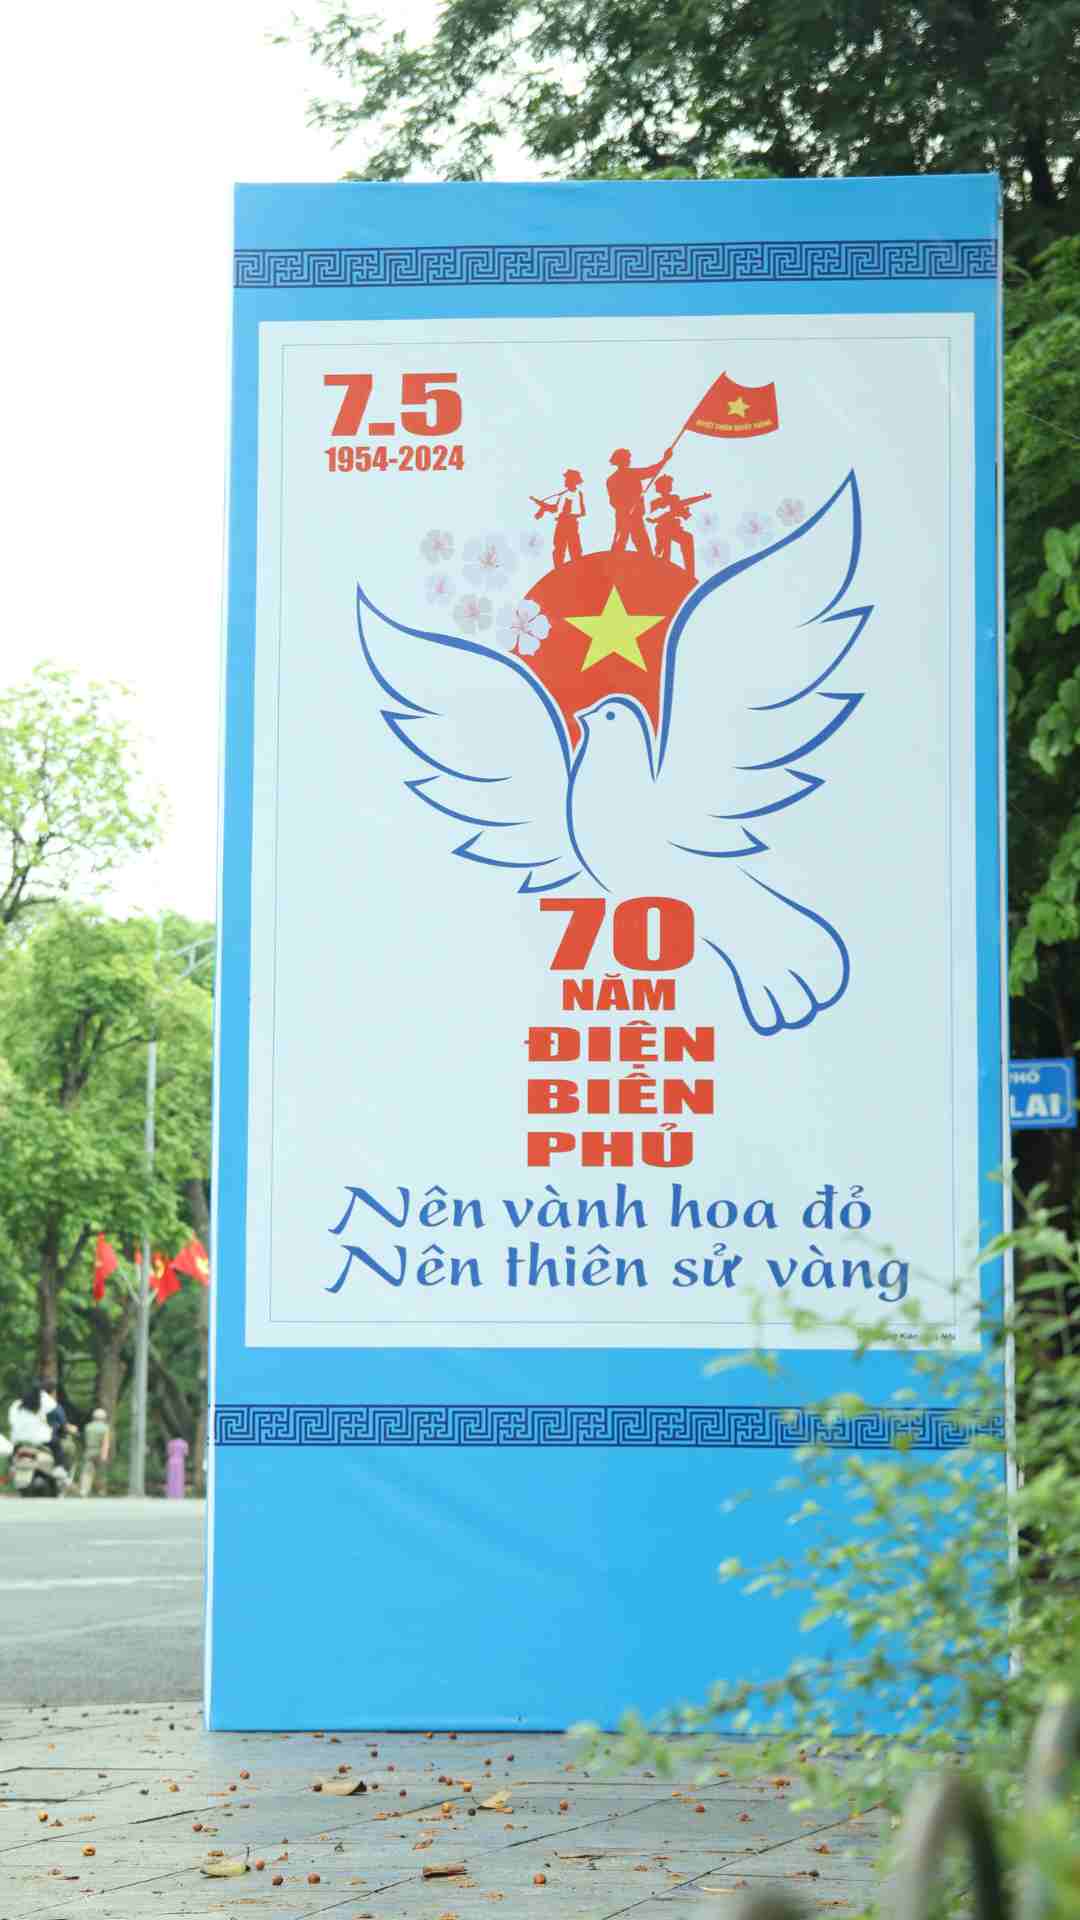 Hướng tới kỷ niệm 70 năm Chiến thắng Điện Biên Phủ, Hà Nội đẩy mạnh các hoạt động tuyên truyền, cổ động trực quan nhằm tuyên truyền về ý nghĩa, giá trị lịch sử của Chiến thắng Điện Biên Phủ. 